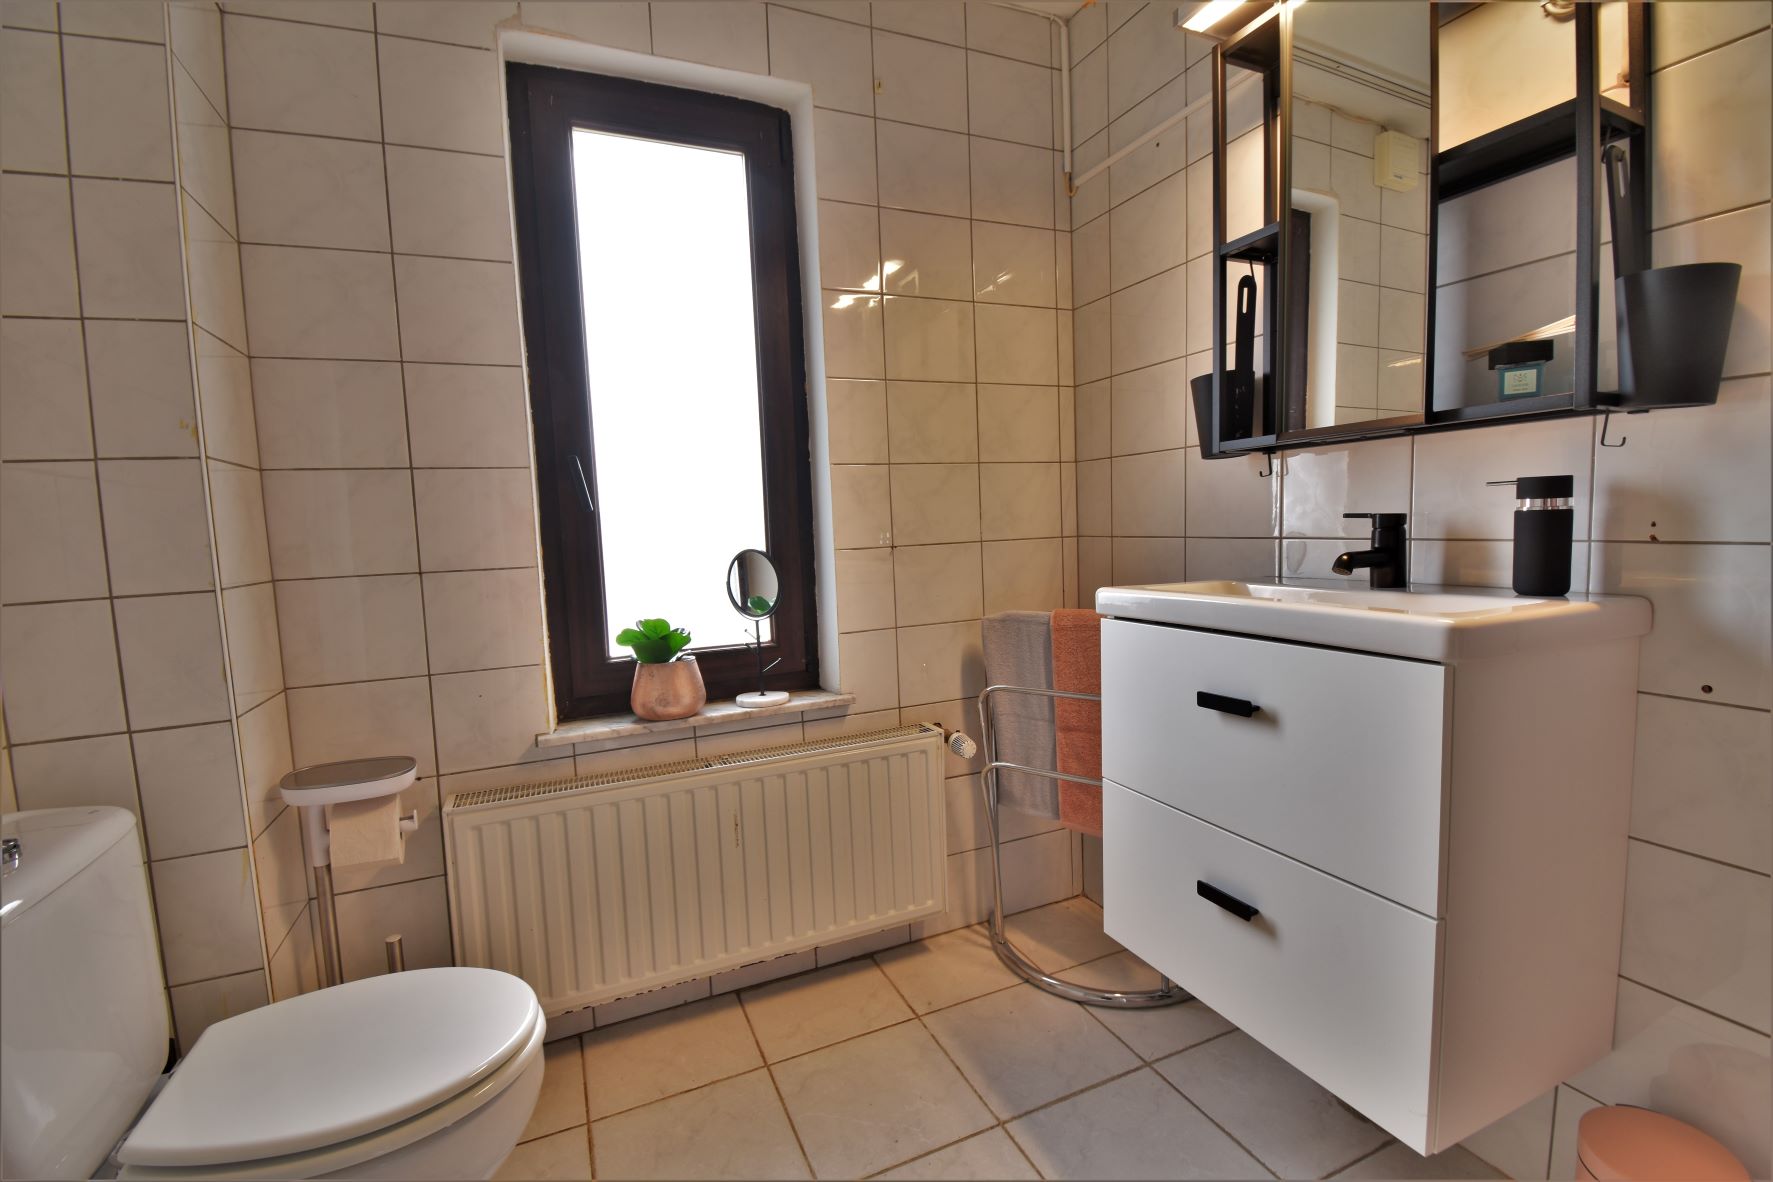 Erbimmobilie - Badezimmer - nachher
Propriété héréditaire - salle de bain - après